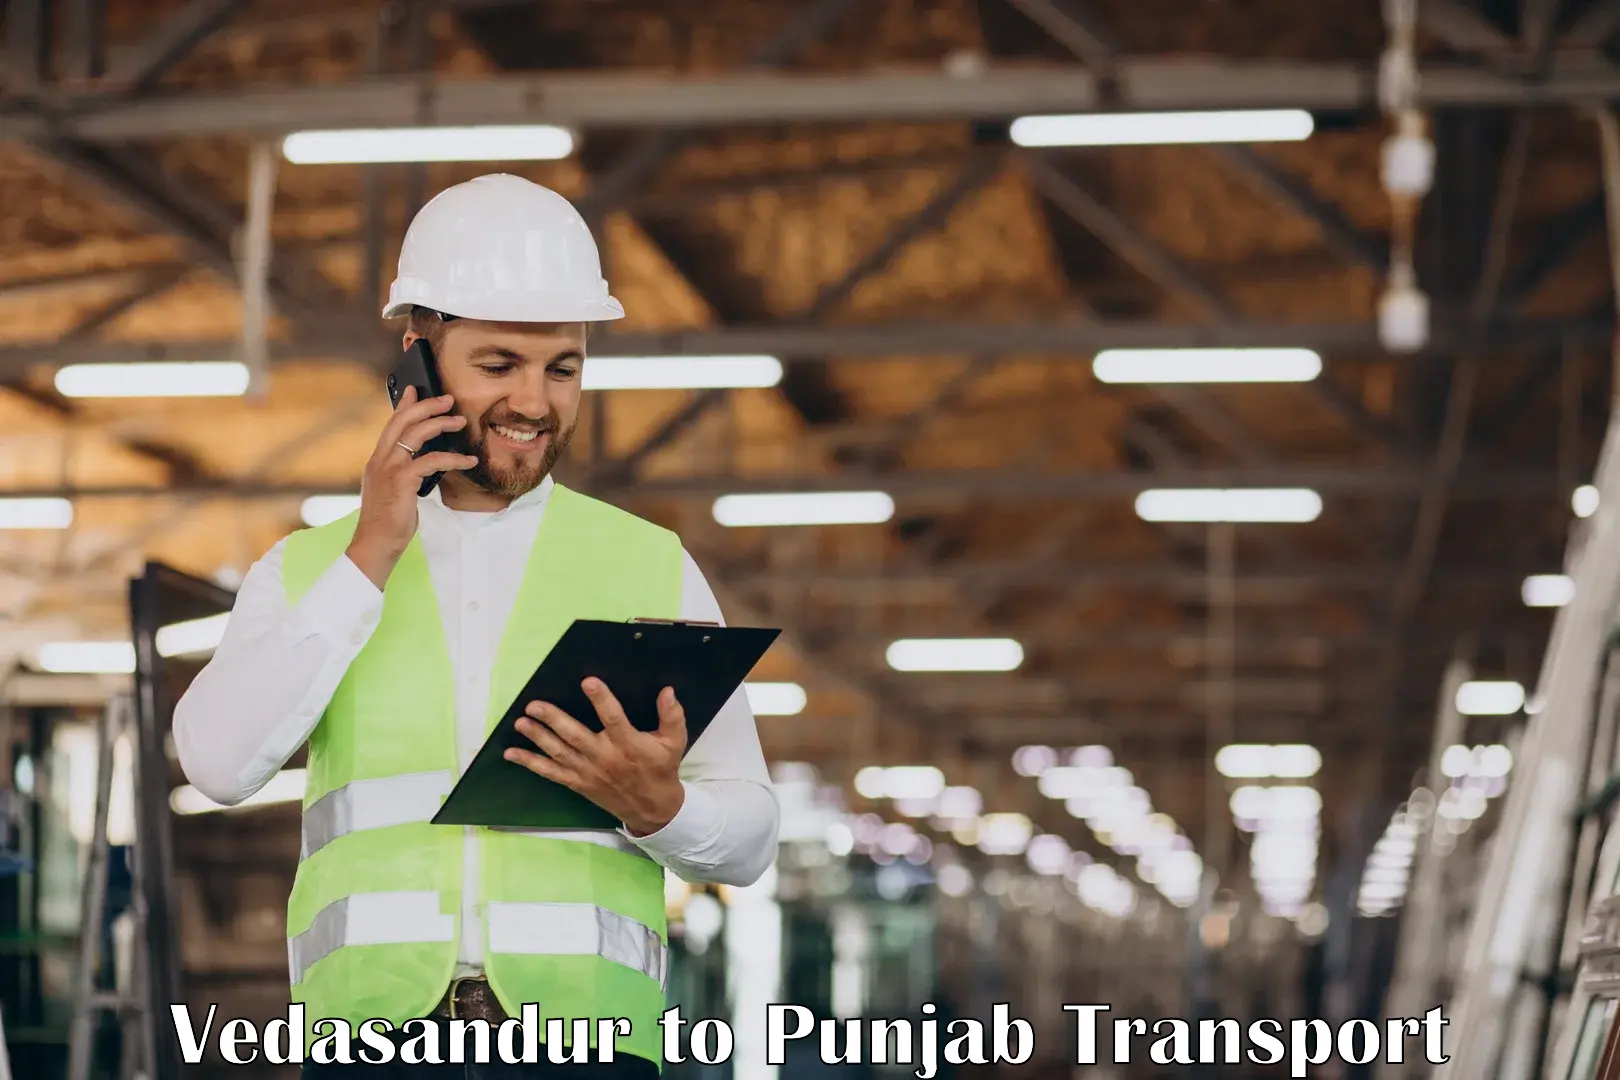 Intercity transport in Vedasandur to Punjab